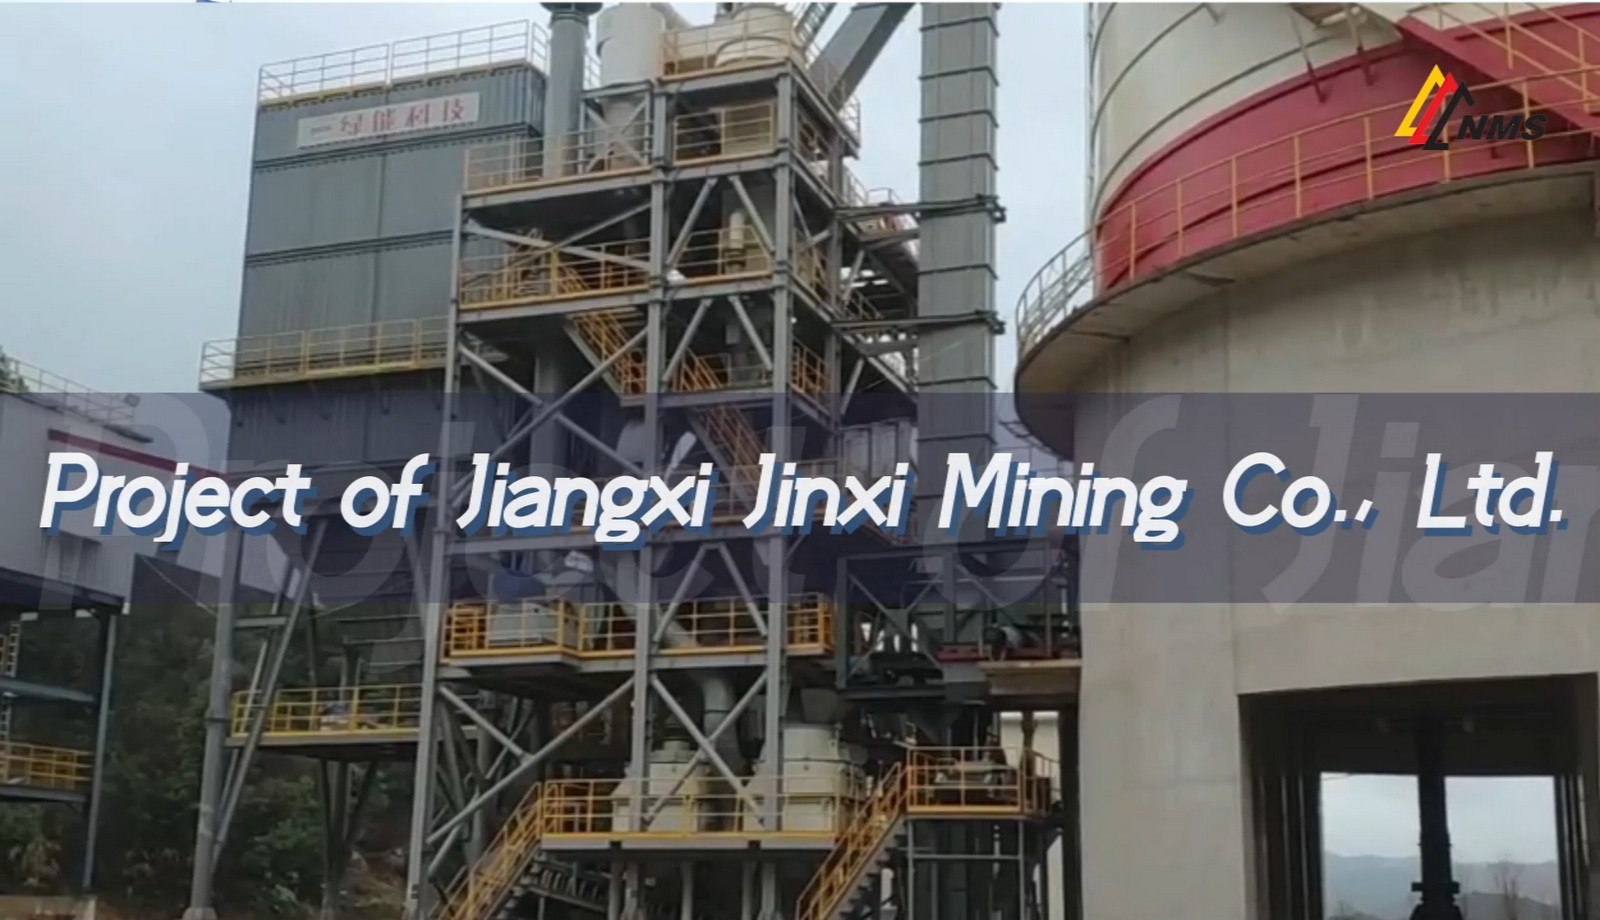 NMS Projcet of Jiangxi Jinxi Mining